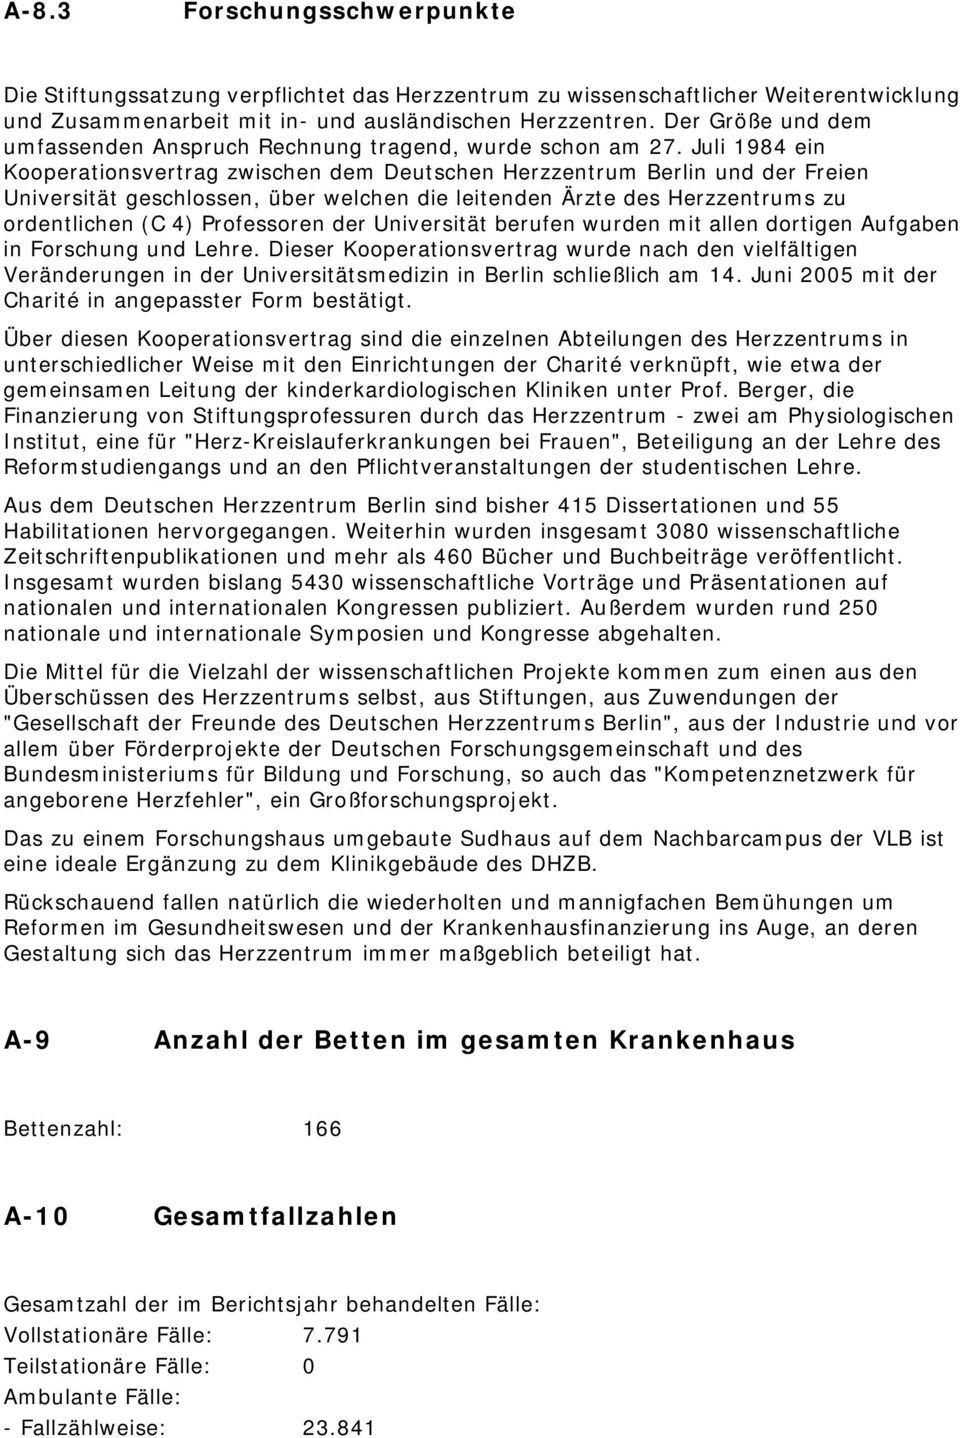 Juli 1984 ein Kooperationsvertrag zwischen dem Deutschen Herzzentrum Berlin und der Freien Universität geschlossen, über welchen die leitenden Ärzte des Herzzentrums zu ordentlichen (C 4) Professoren